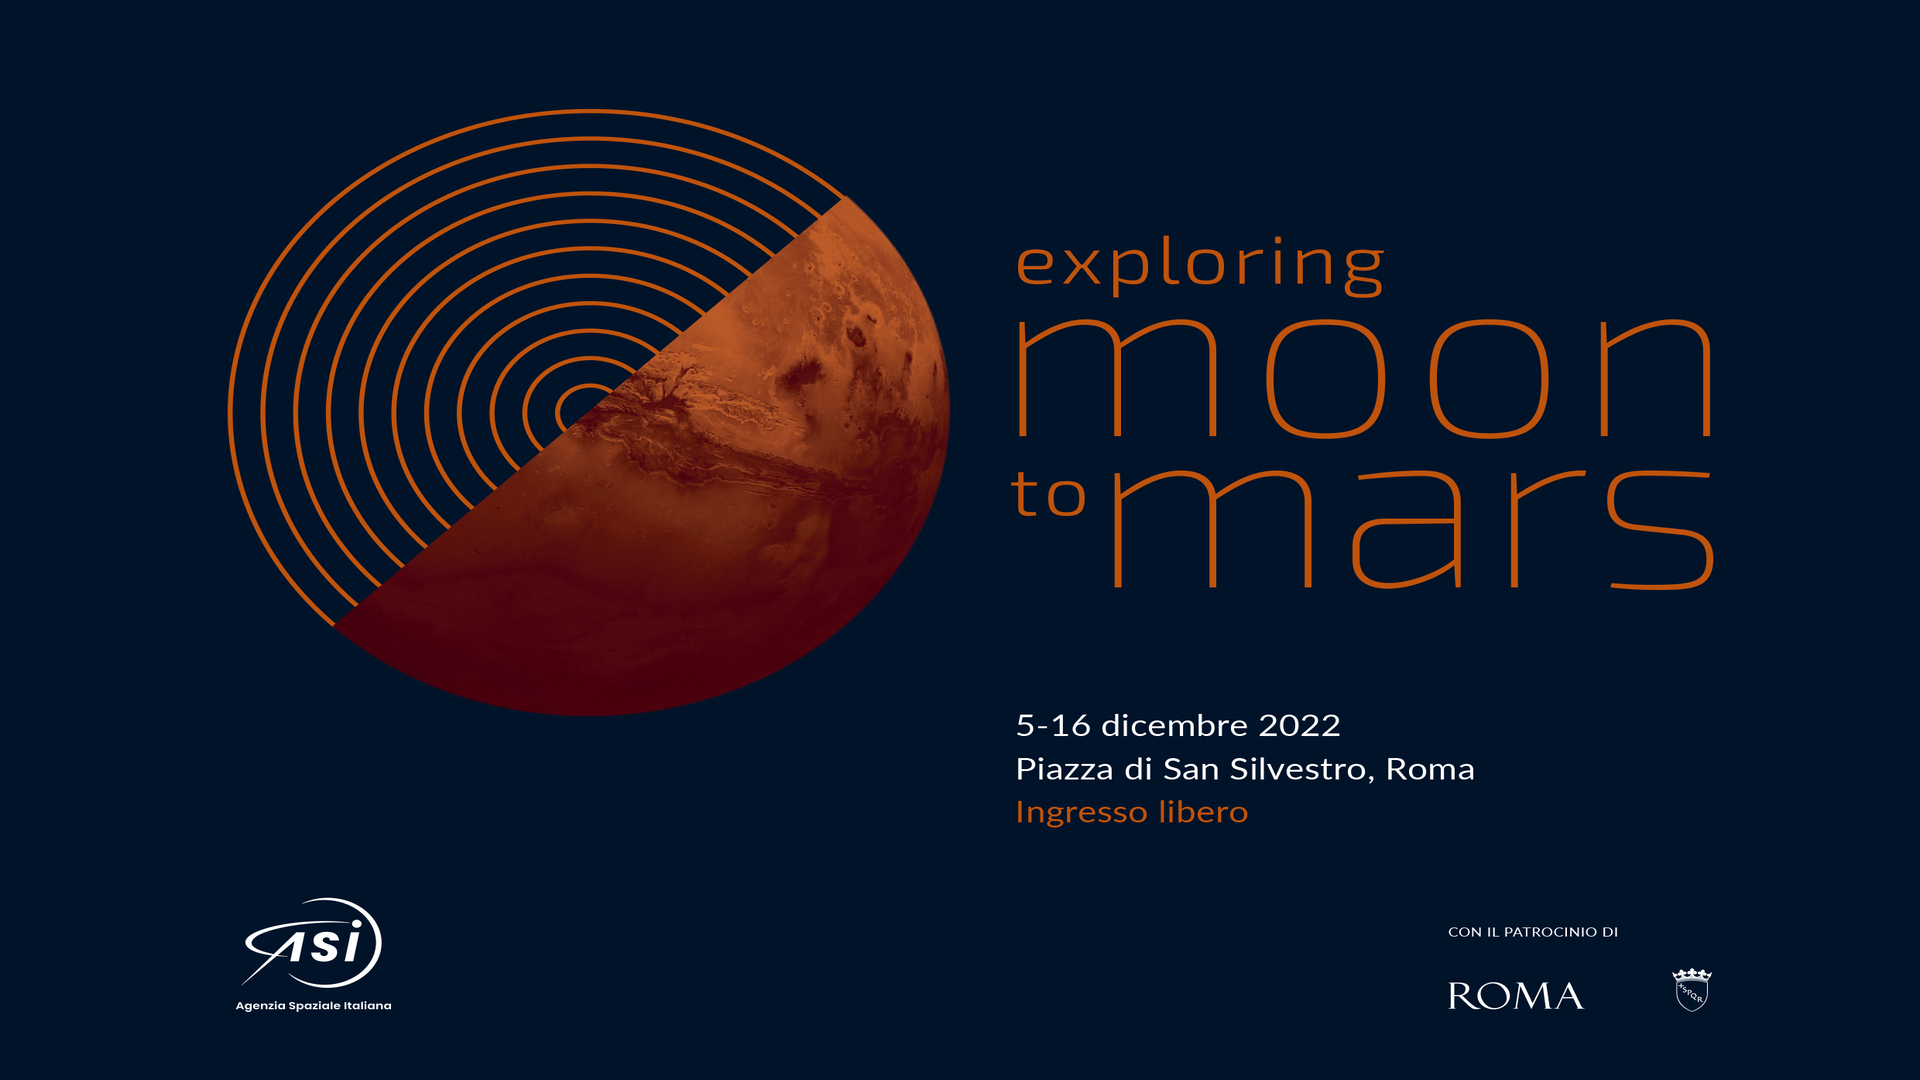 Exploring Moon To Mars: la mostra dell’Agenzia Spaziale Italiana, patrocinata da Roma Capitale, che racconta passato, presente e futuro dell’esplorazione di Luna e Marte